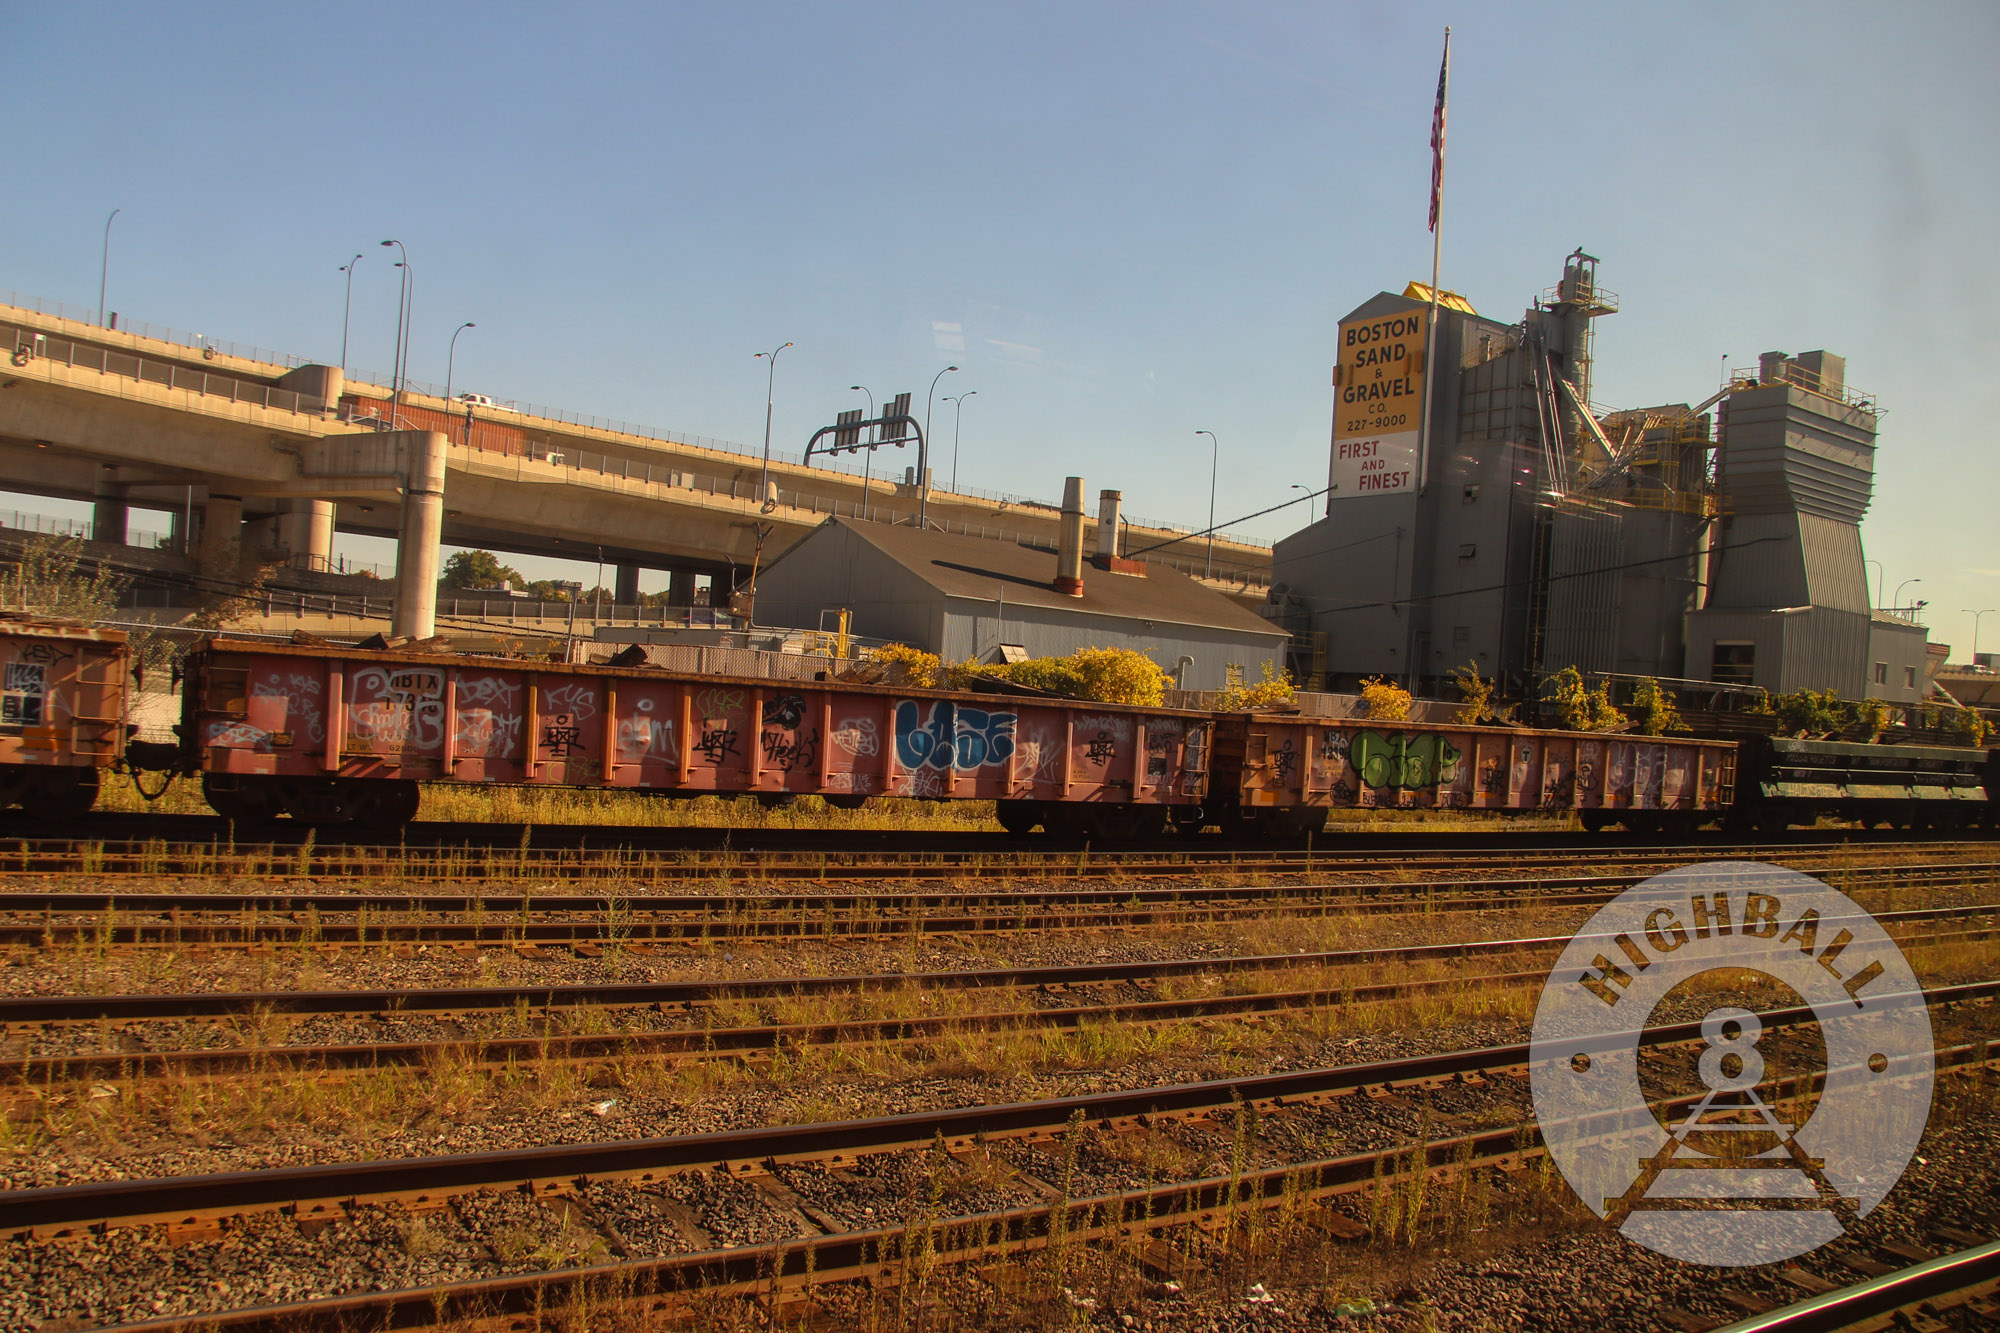 Rail yard outside of Boston North Station, Cambridge, Massachusetts, USA, 2014.